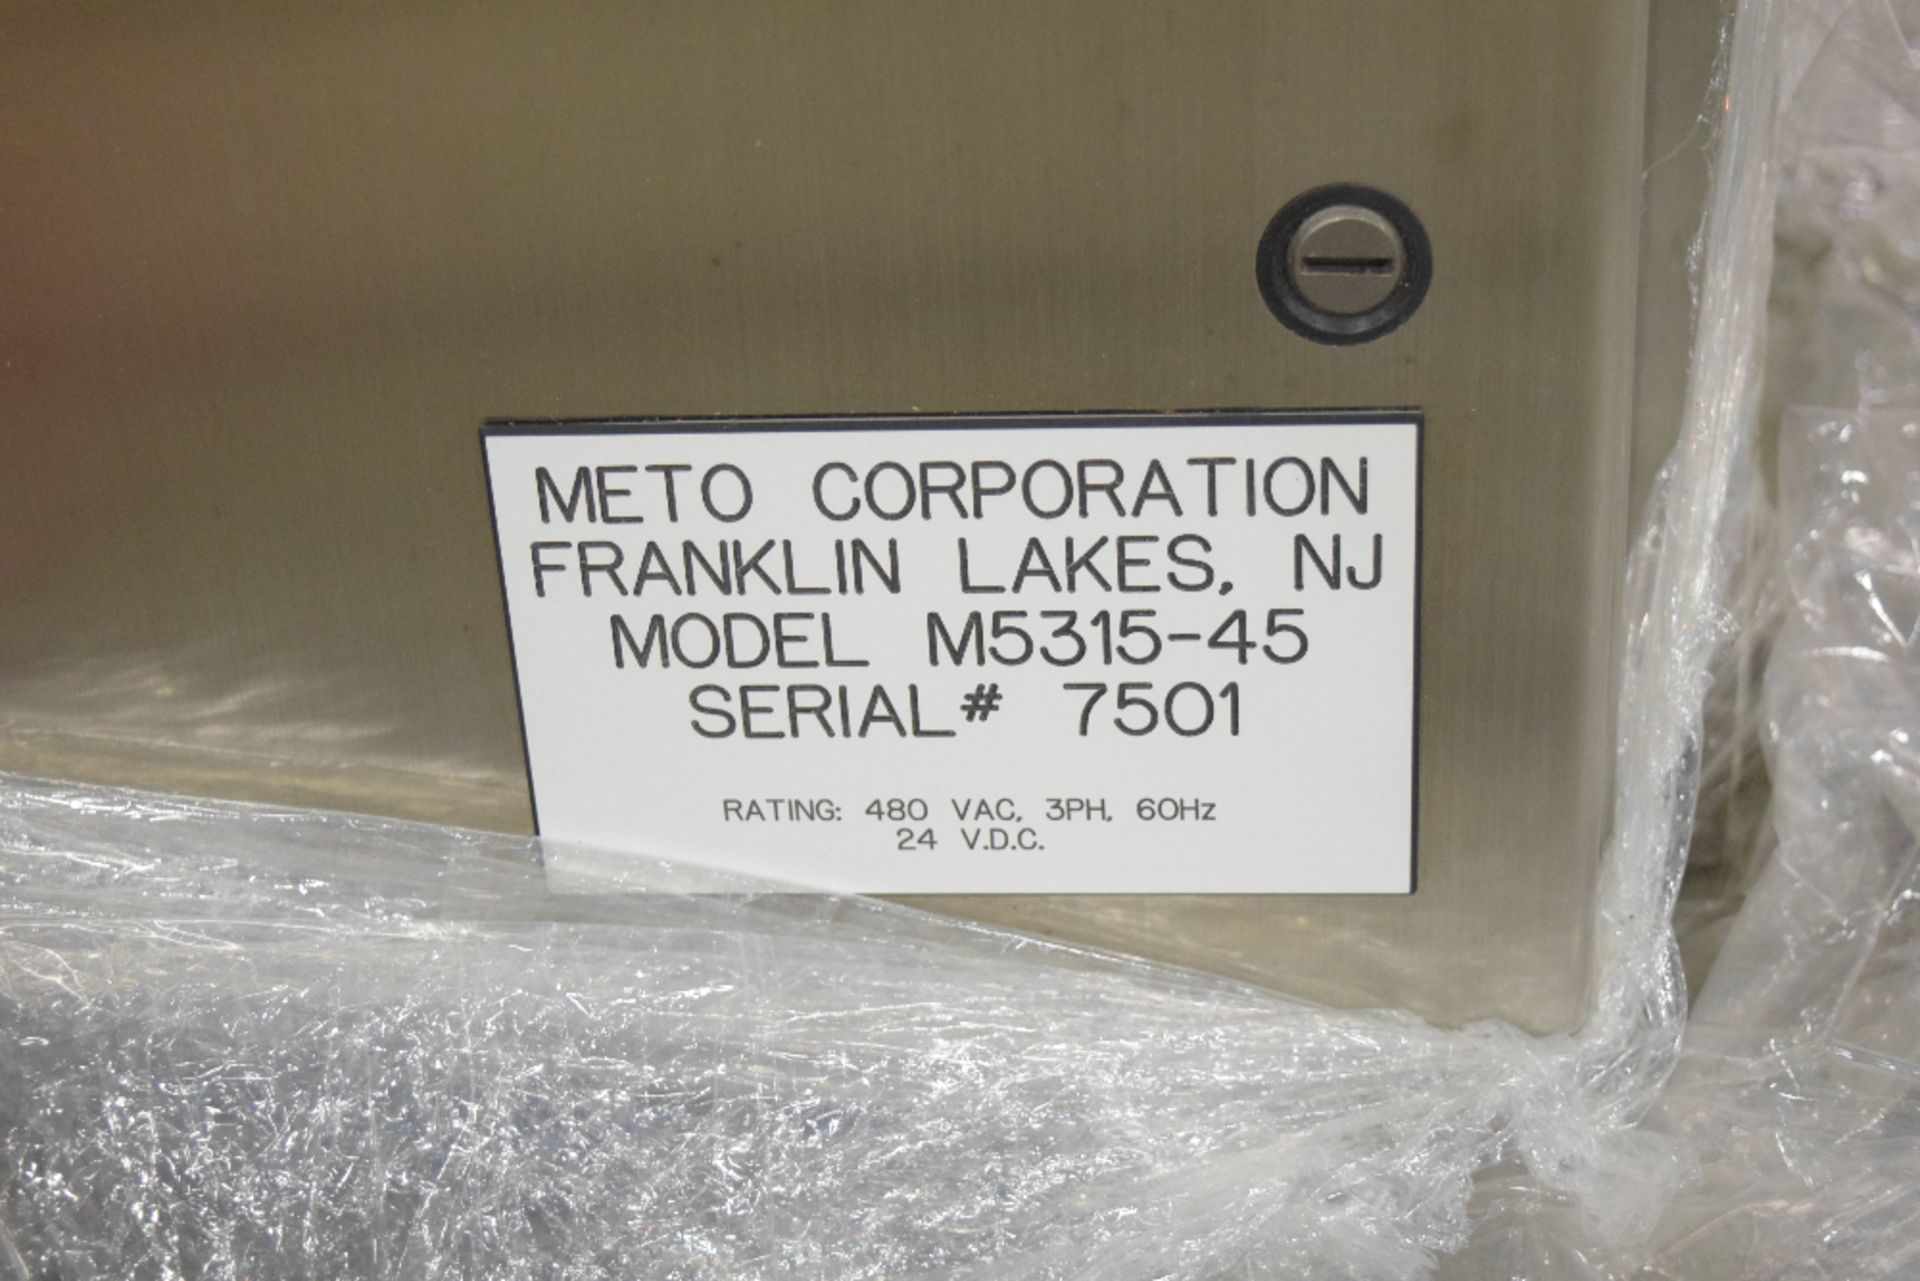 Meto Corp Metolift - Image 3 of 3